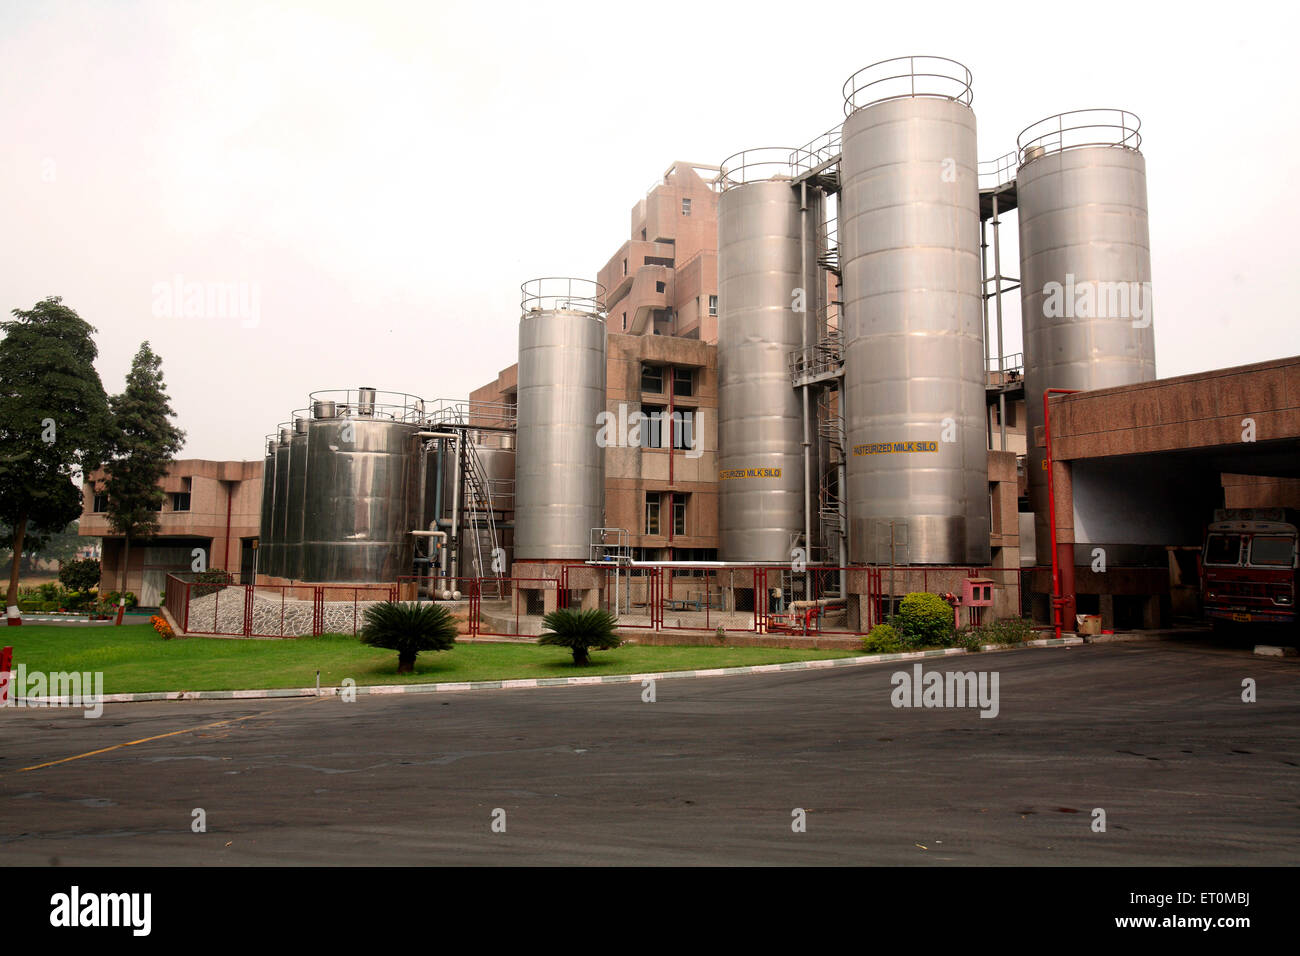 Grands réservoirs et vue extérieure de l'usine Amul dans Anand Gujarat Inde Asie usine indienne Banque D'Images